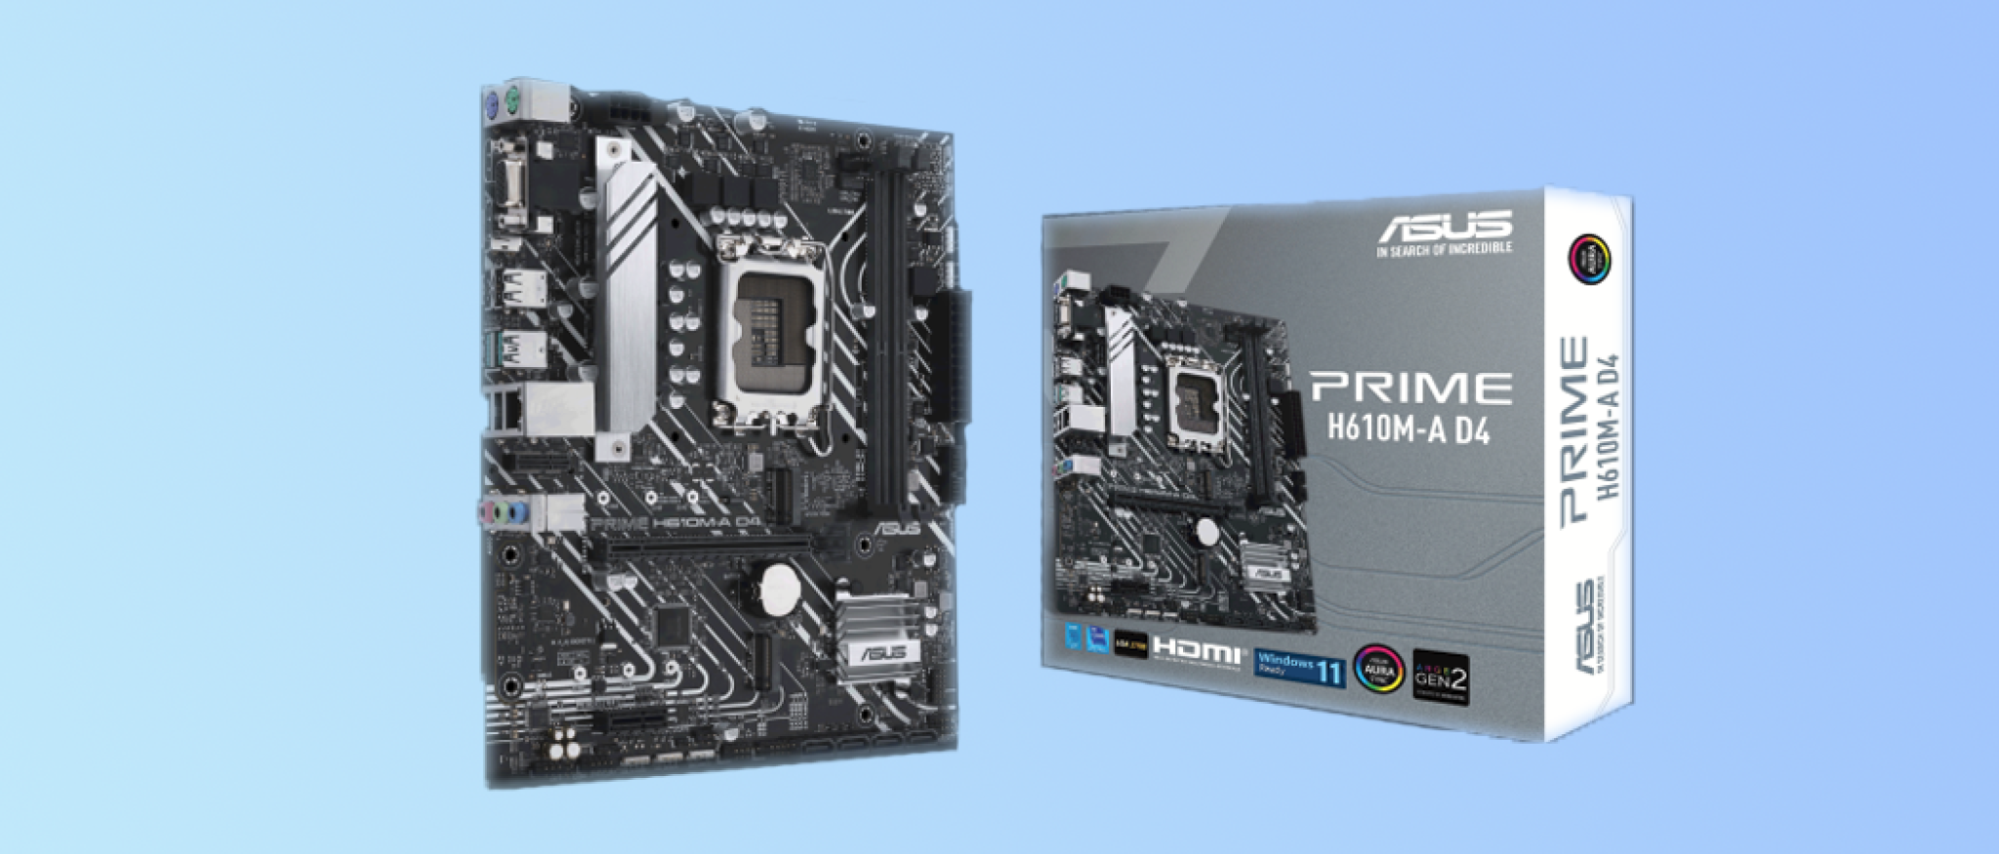 Best Budget Alder Lake Motherboard (H610 Chipset): Asus Prime H610M-A D4